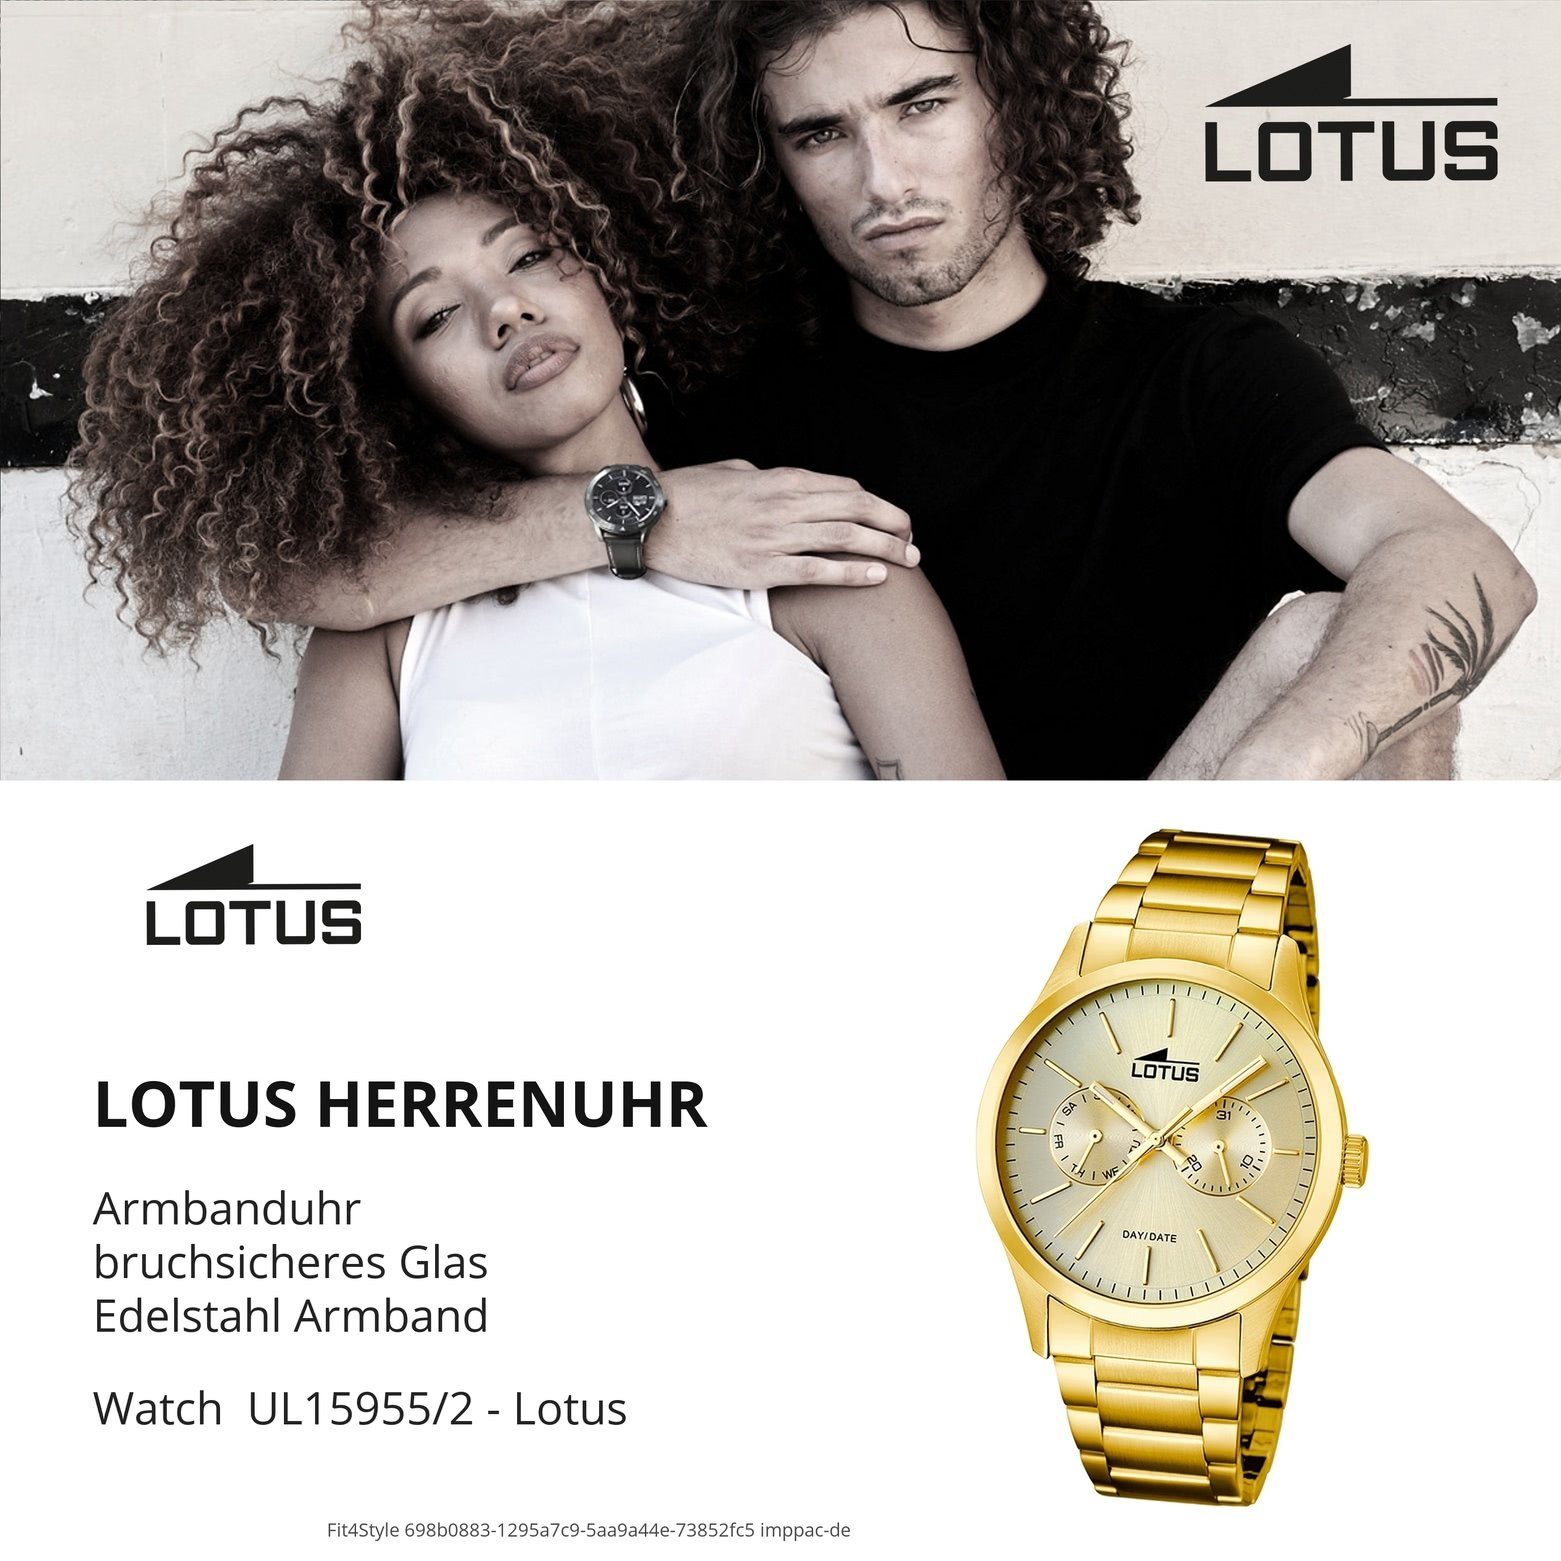 Edelstahl, PVDarmband Herren Lotus Quarzuhr gold Armbanduhr L15955/2, Uhr rund, Elegant Lotus Herren